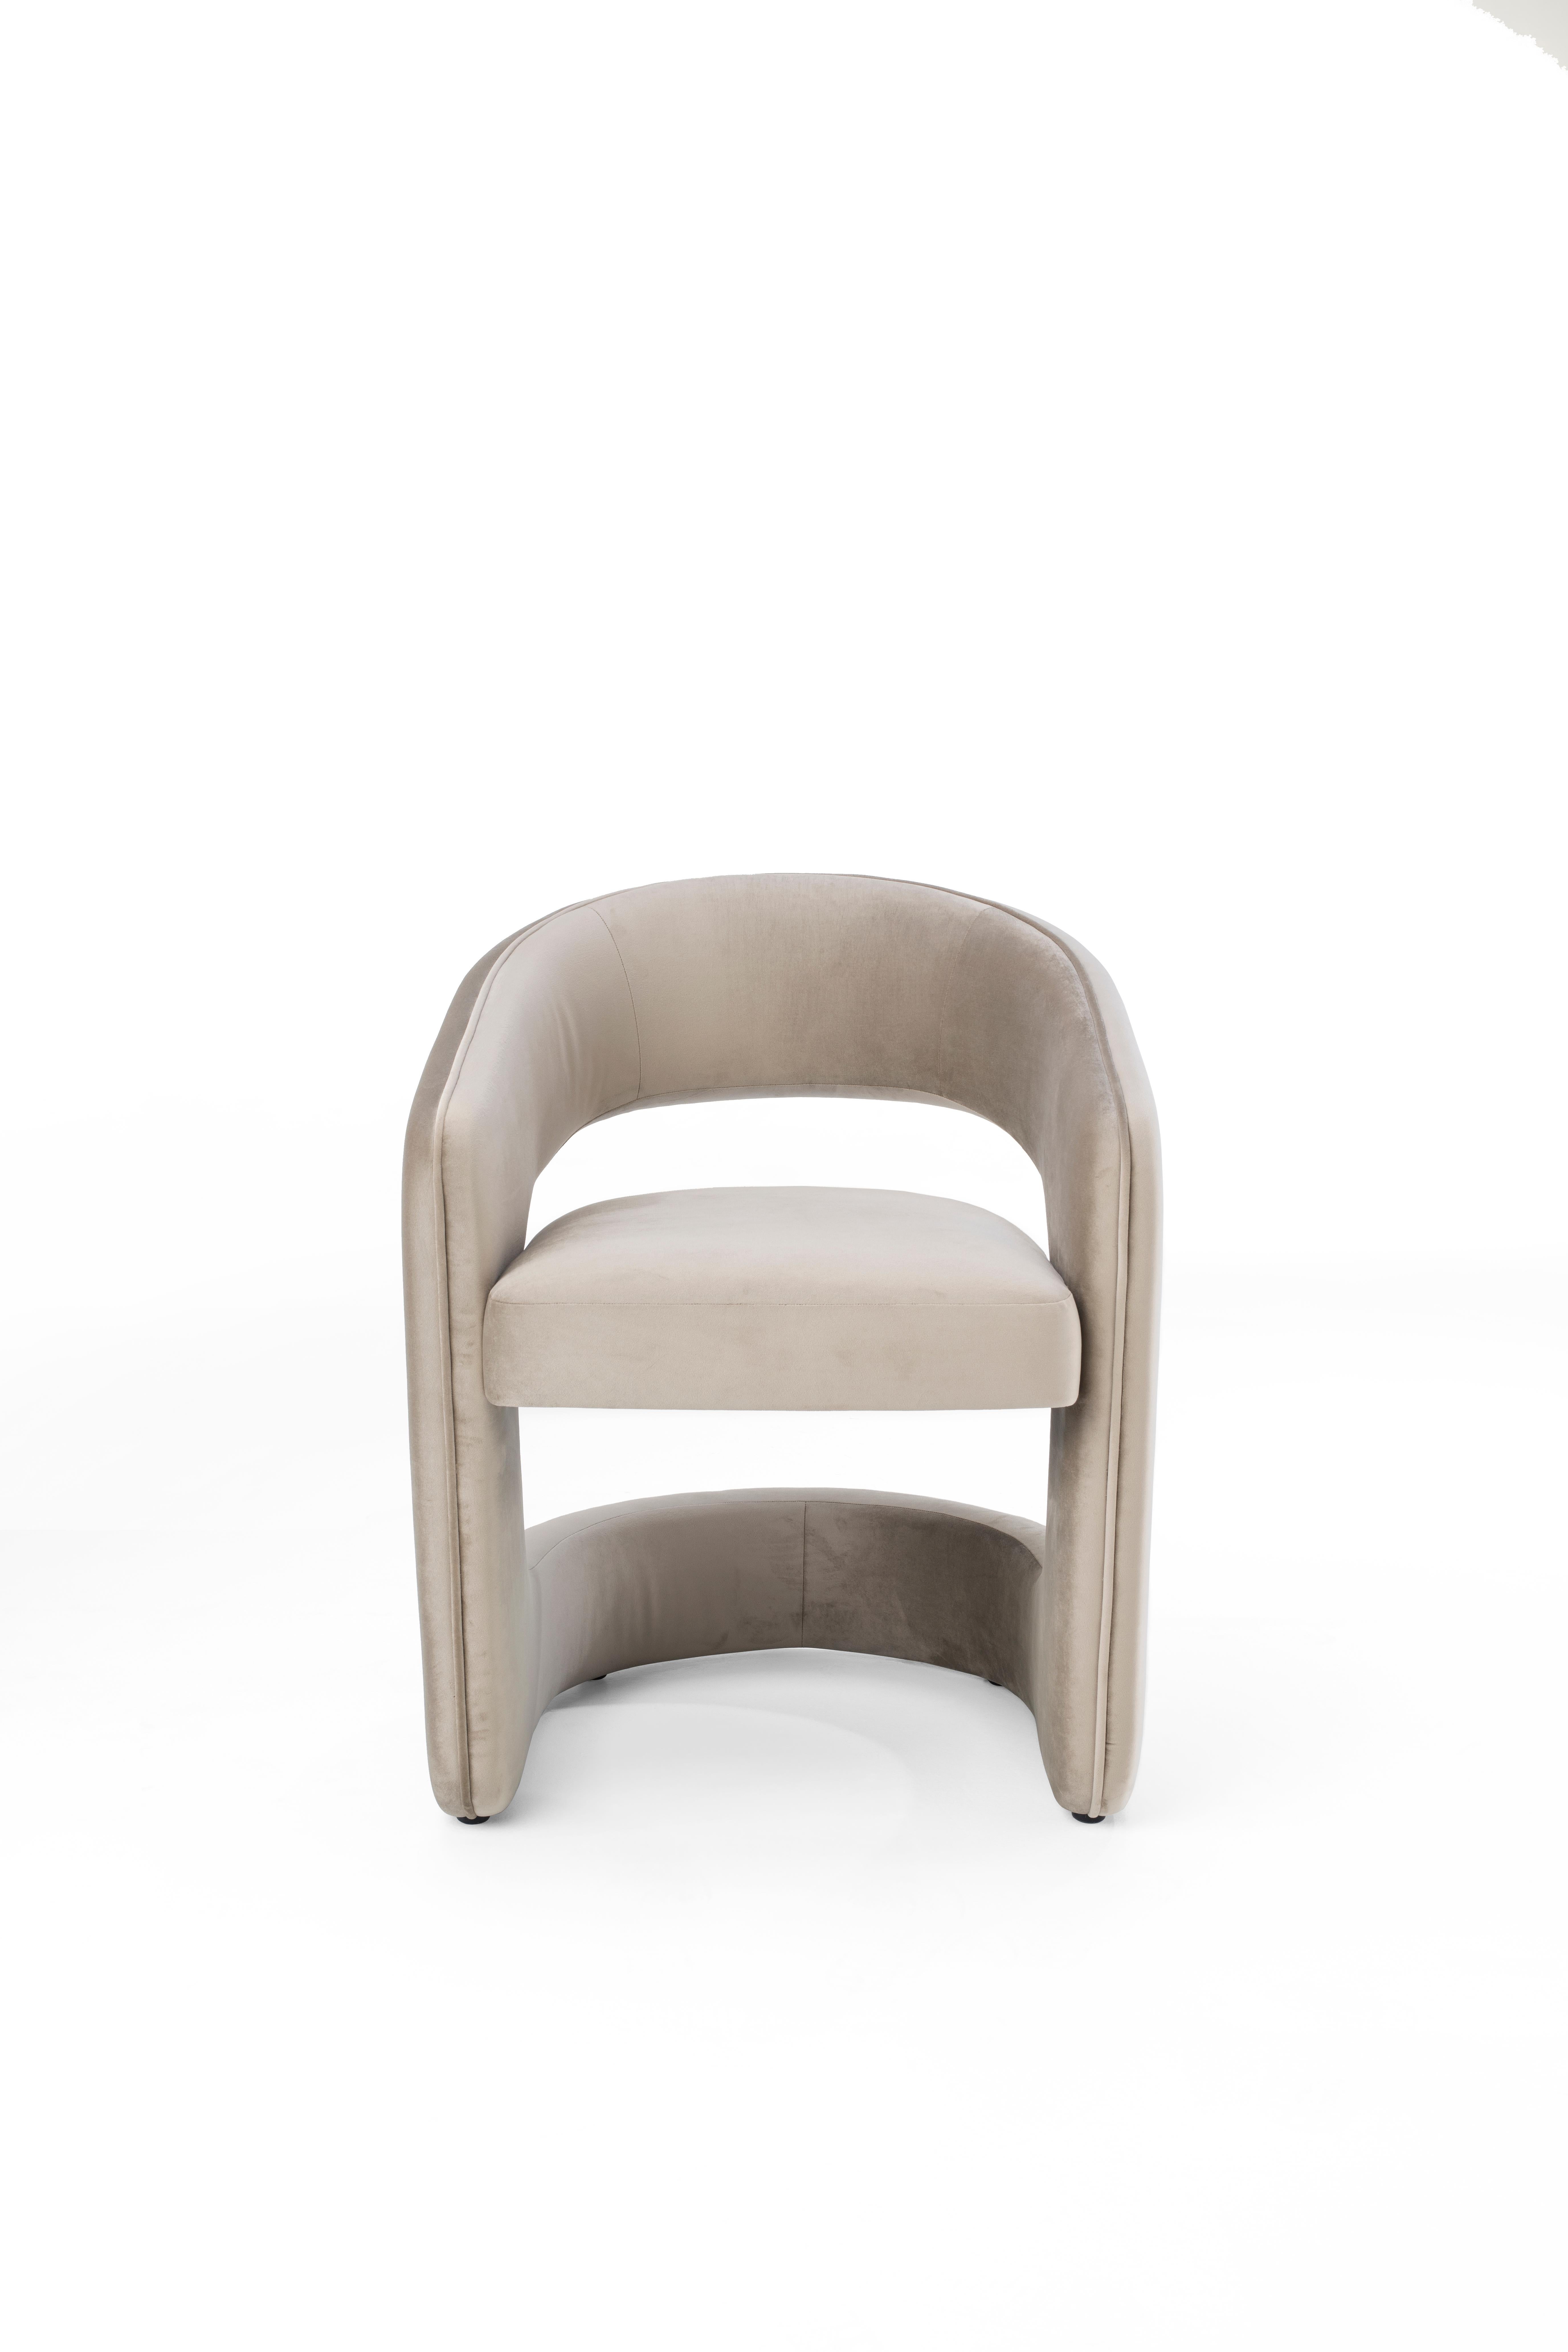 Le dossier incurvé proéminent confère à cette chaise de taille généreuse son design moderne et en fait la pièce d'appoint idéale pour tous ceux qui recherchent le summum du style sans lésiner sur le confort.
Entièrement revêtue de tissu ou de cuir